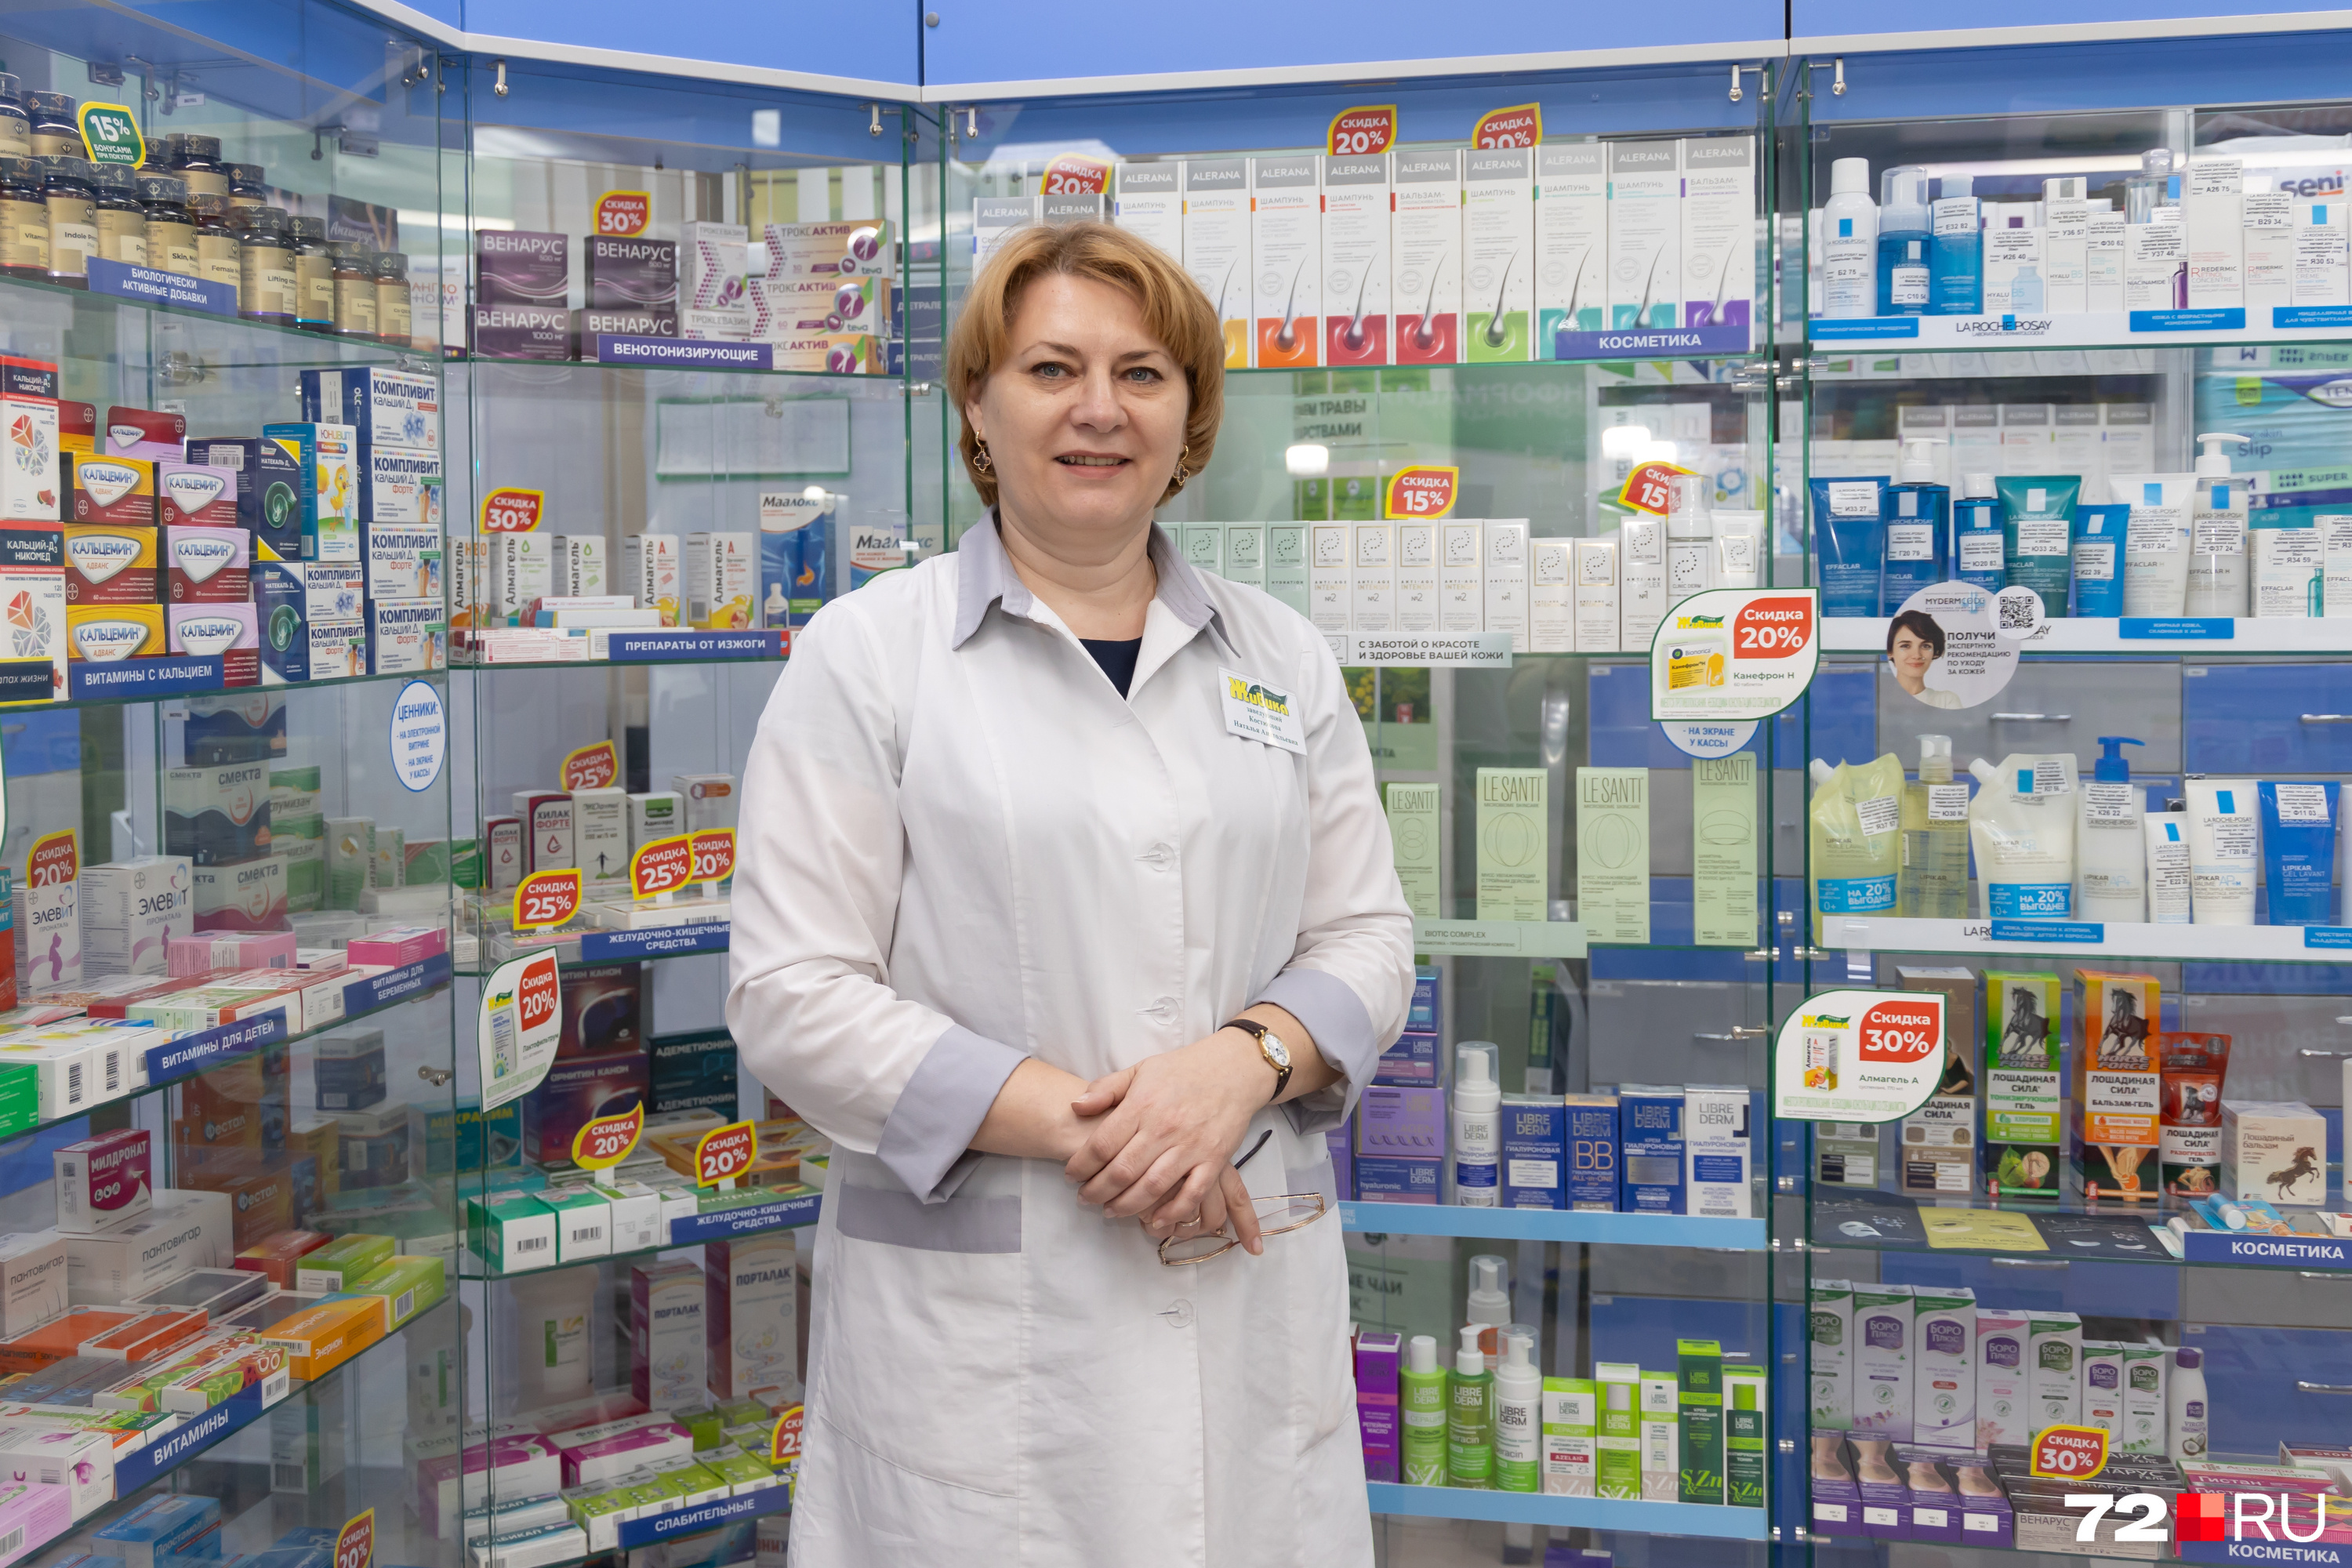 Эксперты пояснили, почему в аптеках Ростова строго требуют рецепты на препараты